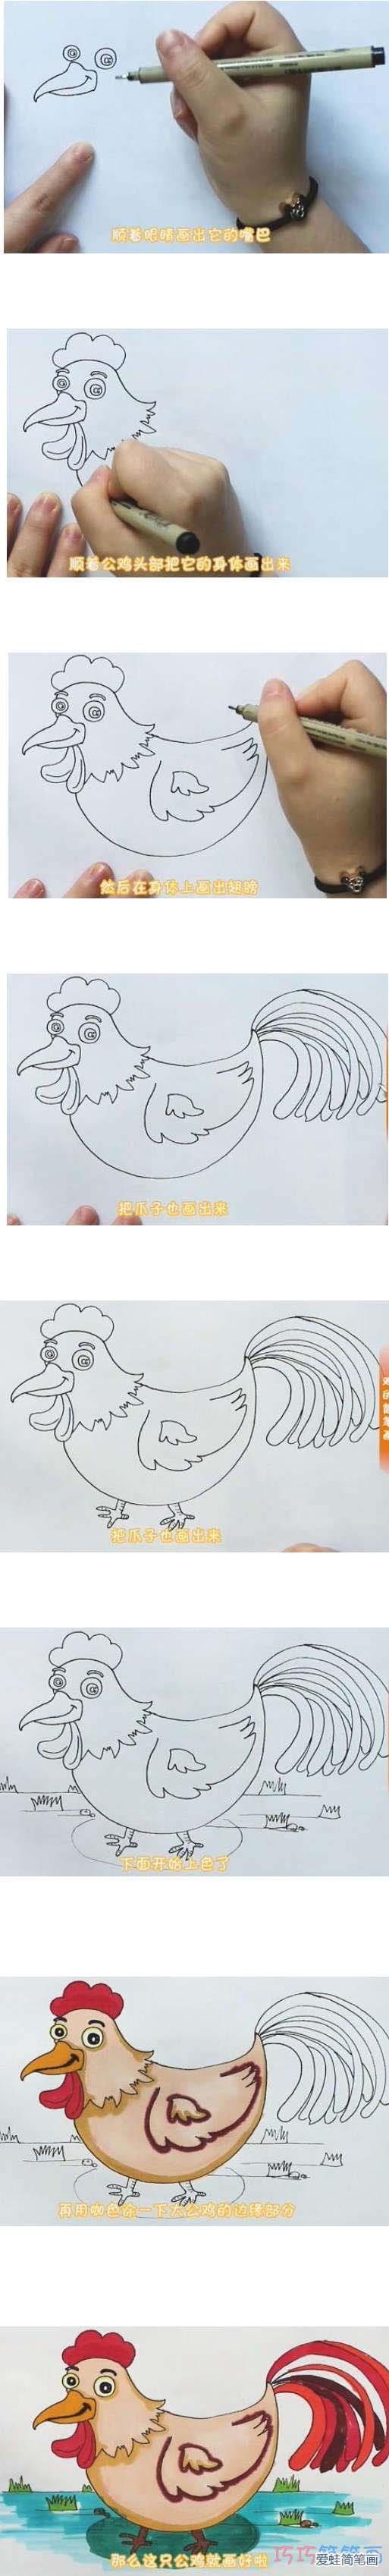 教你一步一步绘画公鸡简笔画